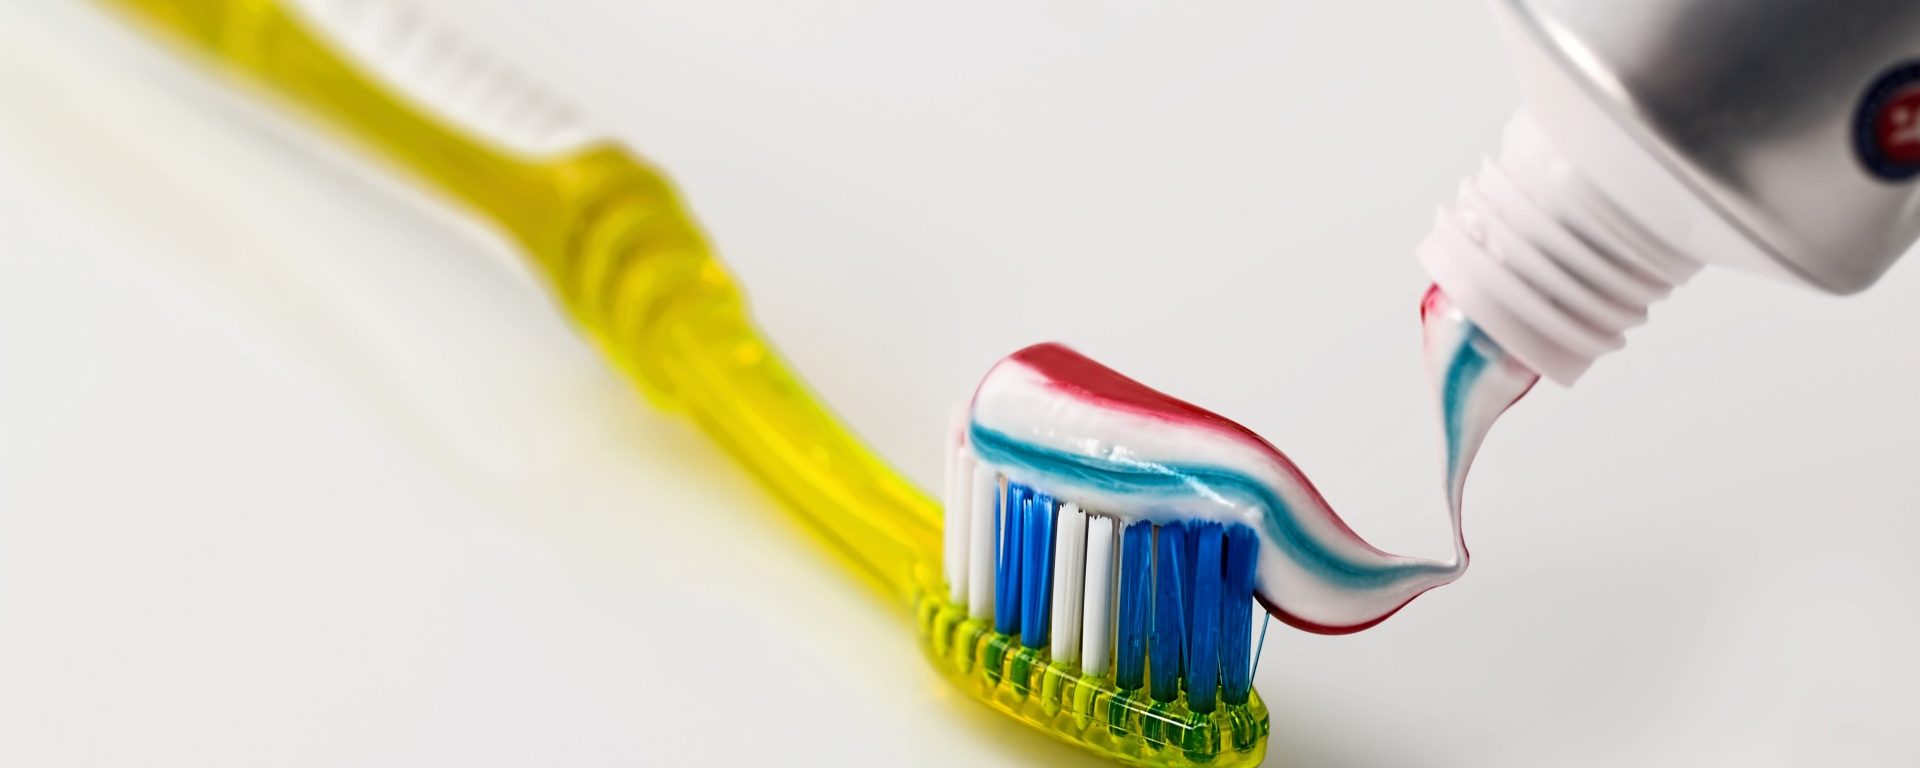 Schön gepflegte Zähne mit der richtigen Zahnpasta